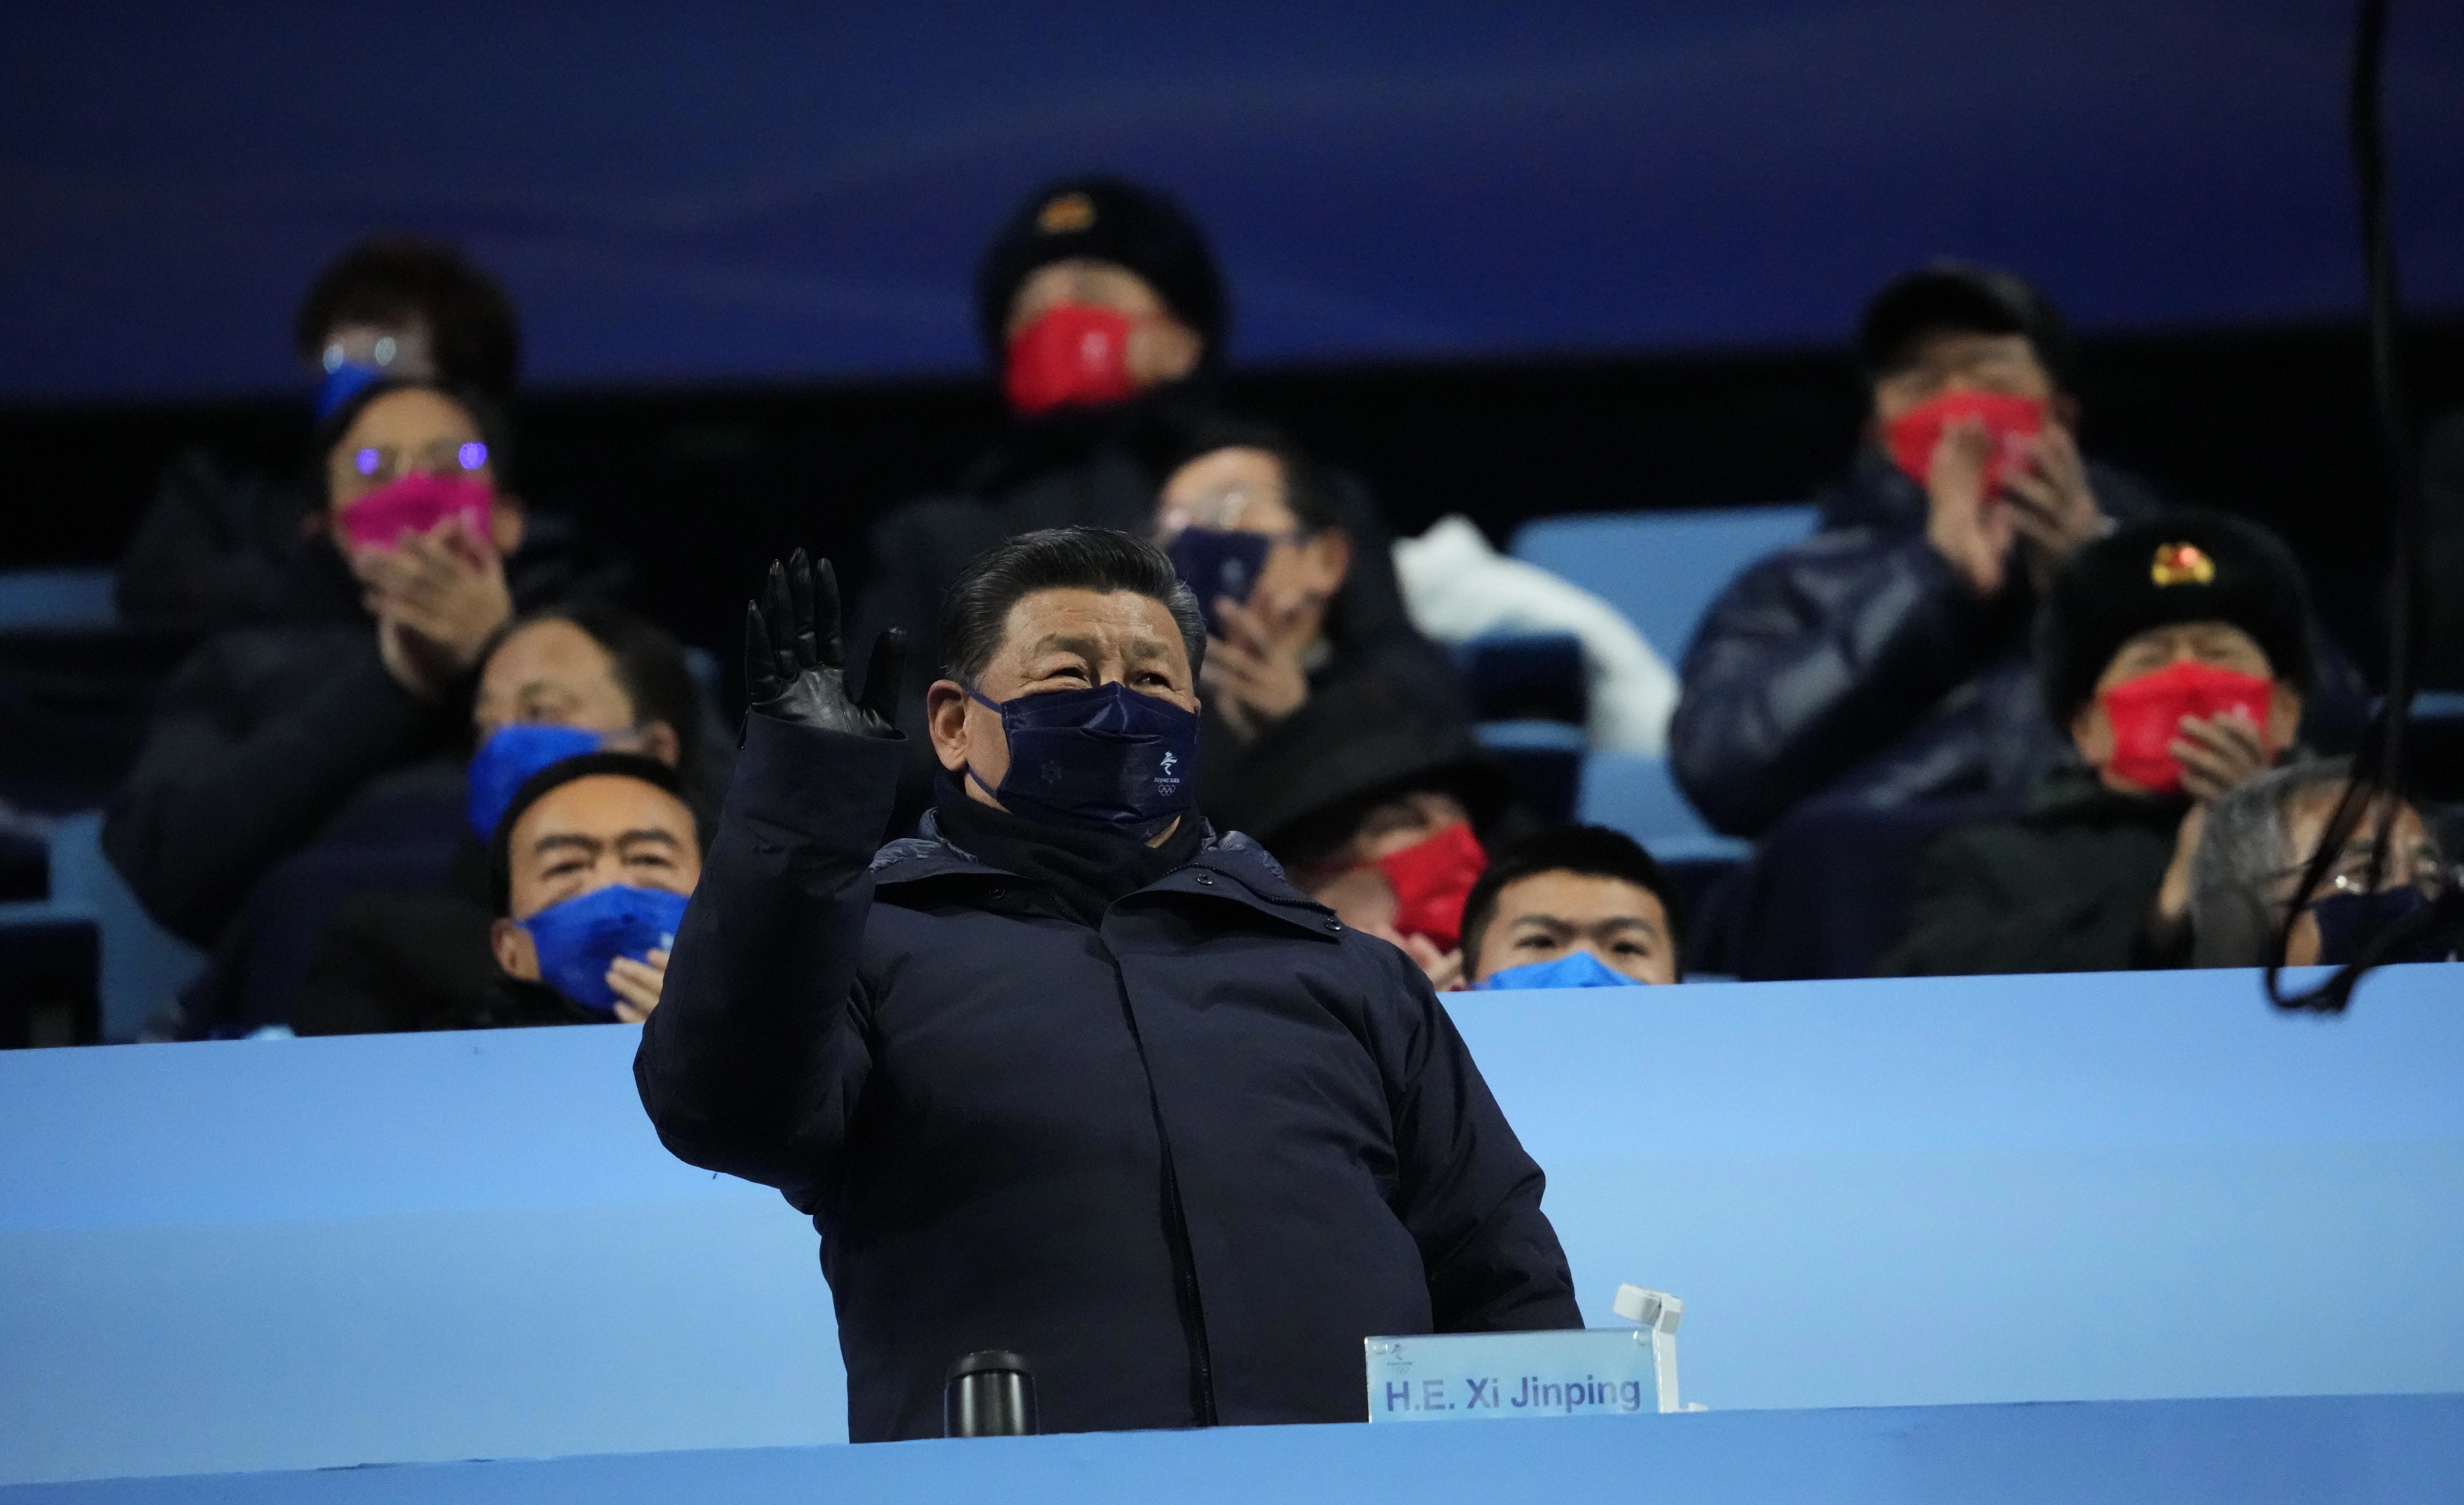 נשיא הרפובליקה העממית של סין, שי ג'נפינג, בטקס פתיחת אולימפיאדת החורף